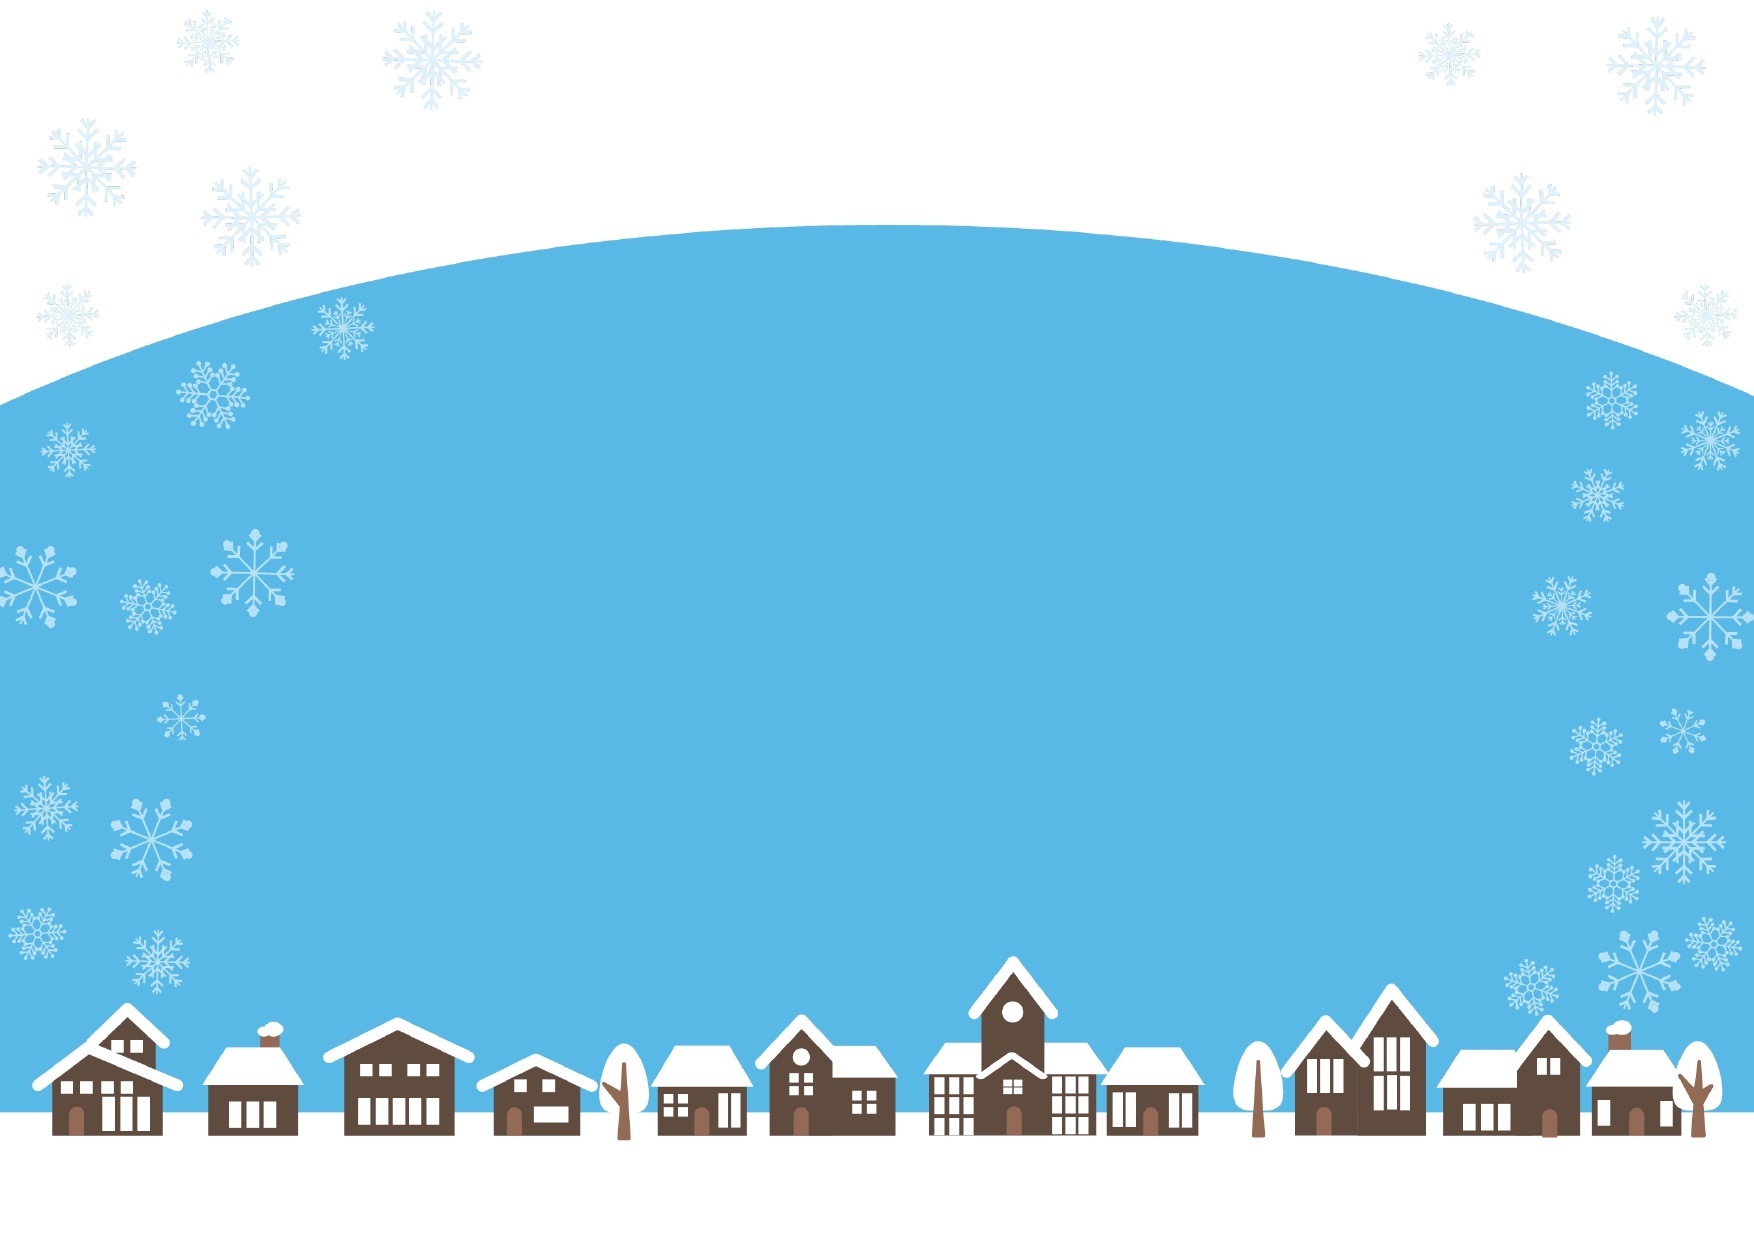 雪の結晶と雪が降る街並みフレーム・飾り枠